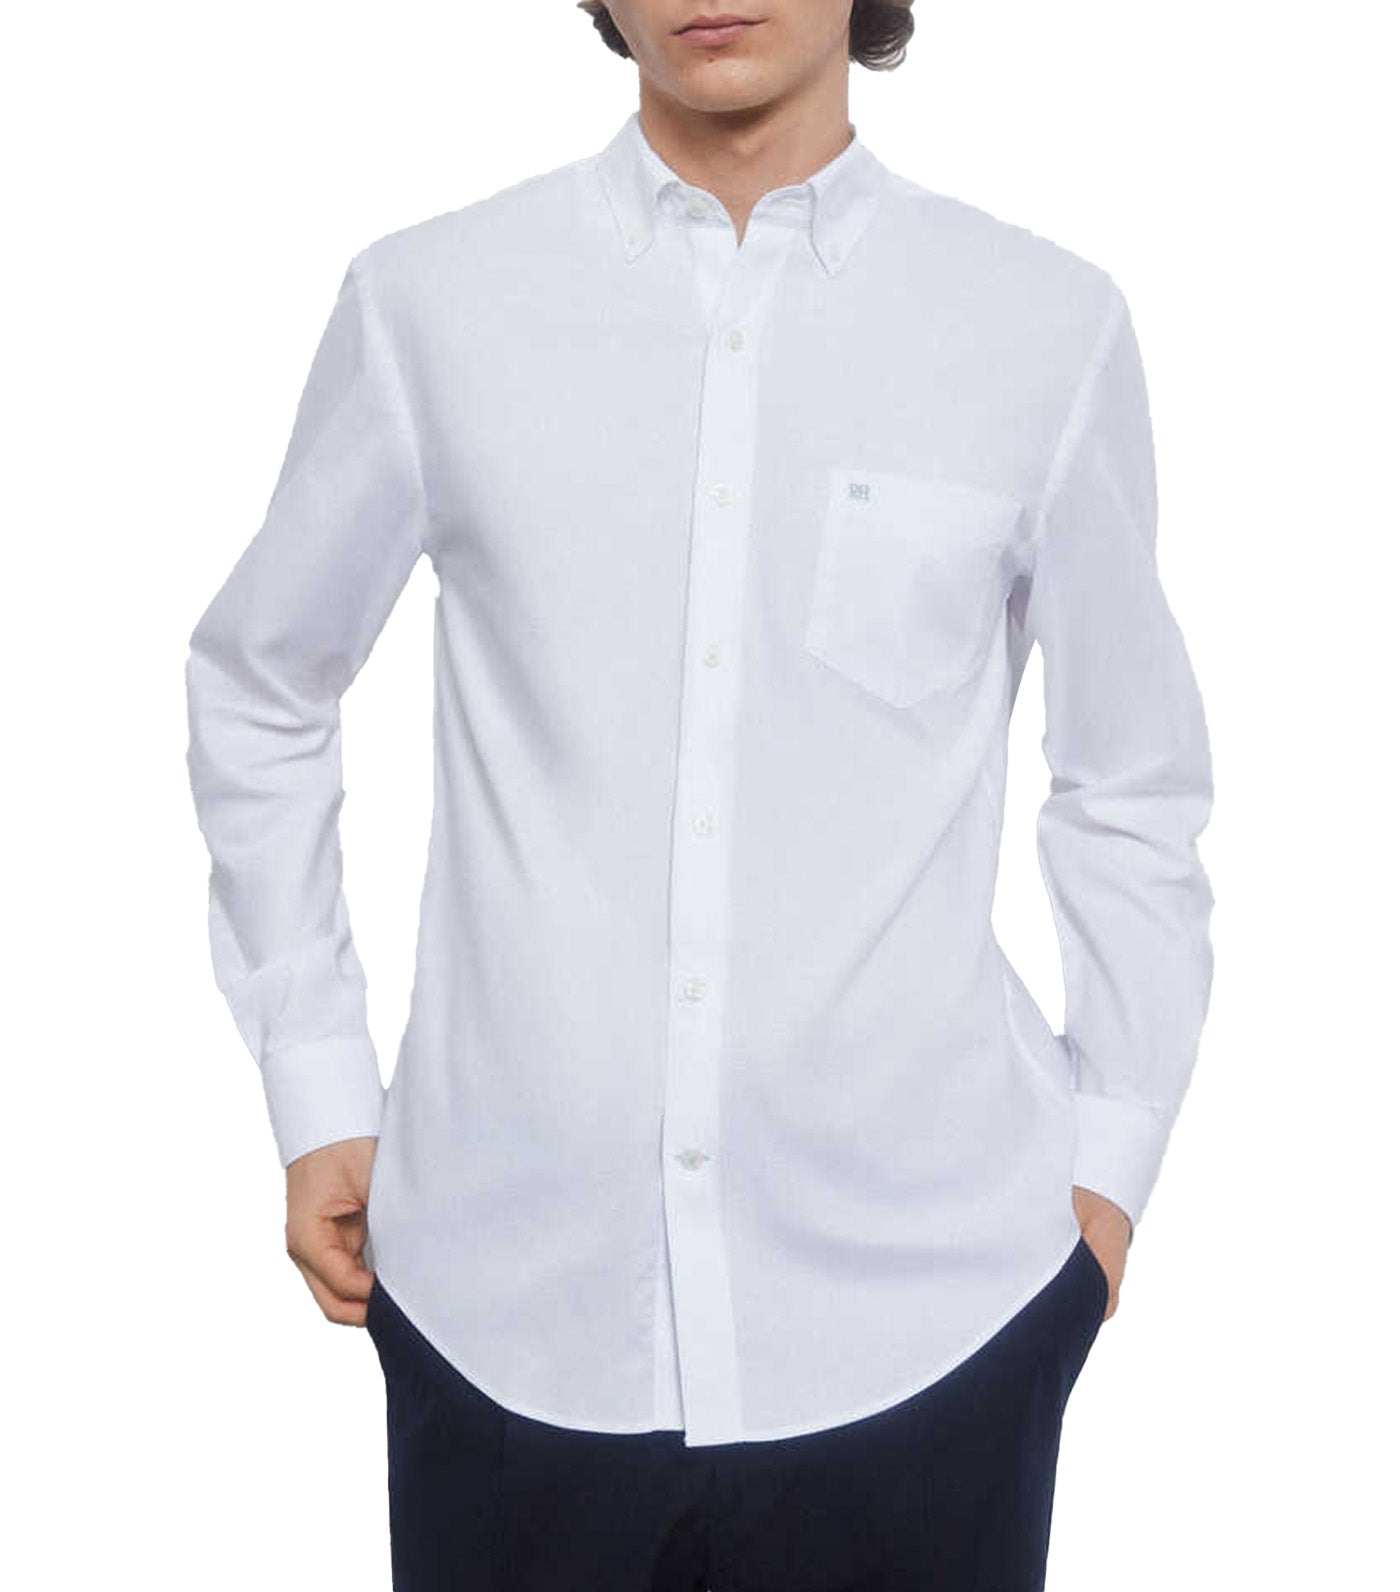 Plain Non Iron Oxford Shirt White